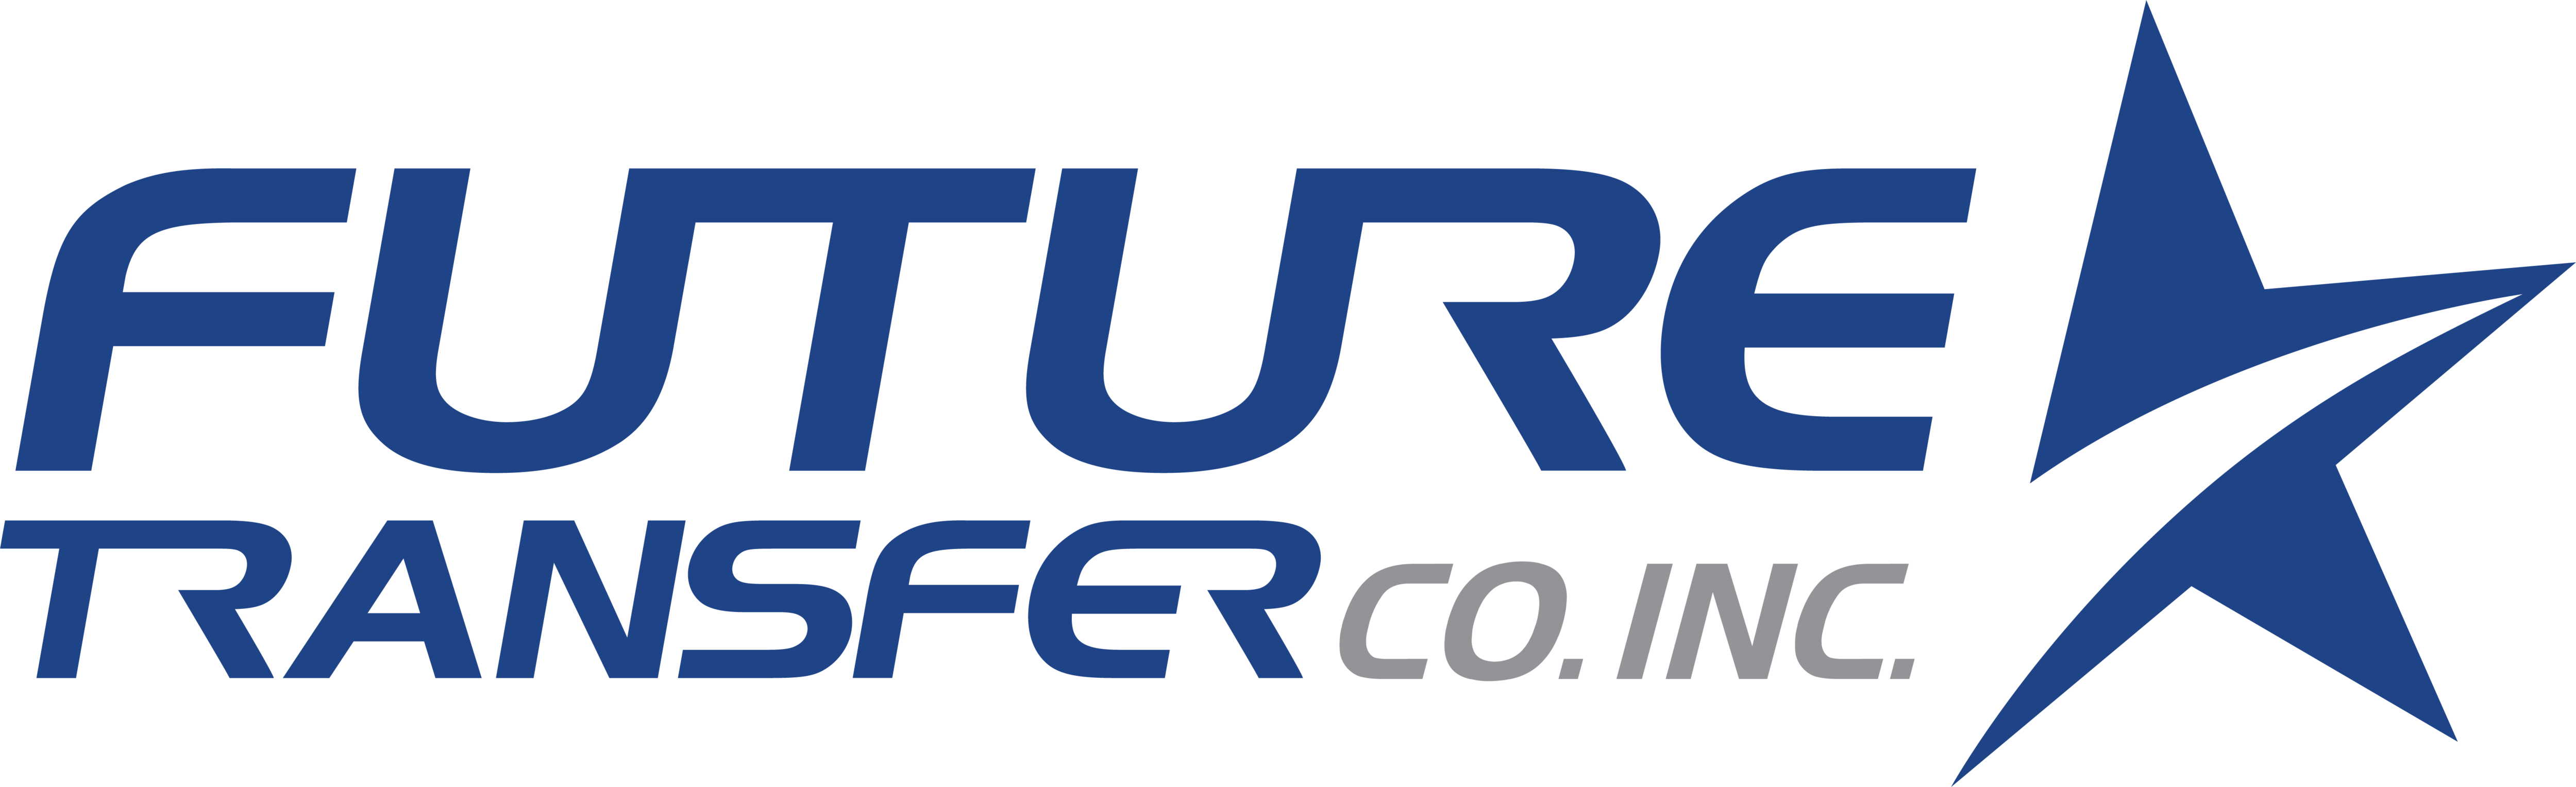 Future Transfer Co. Inc.